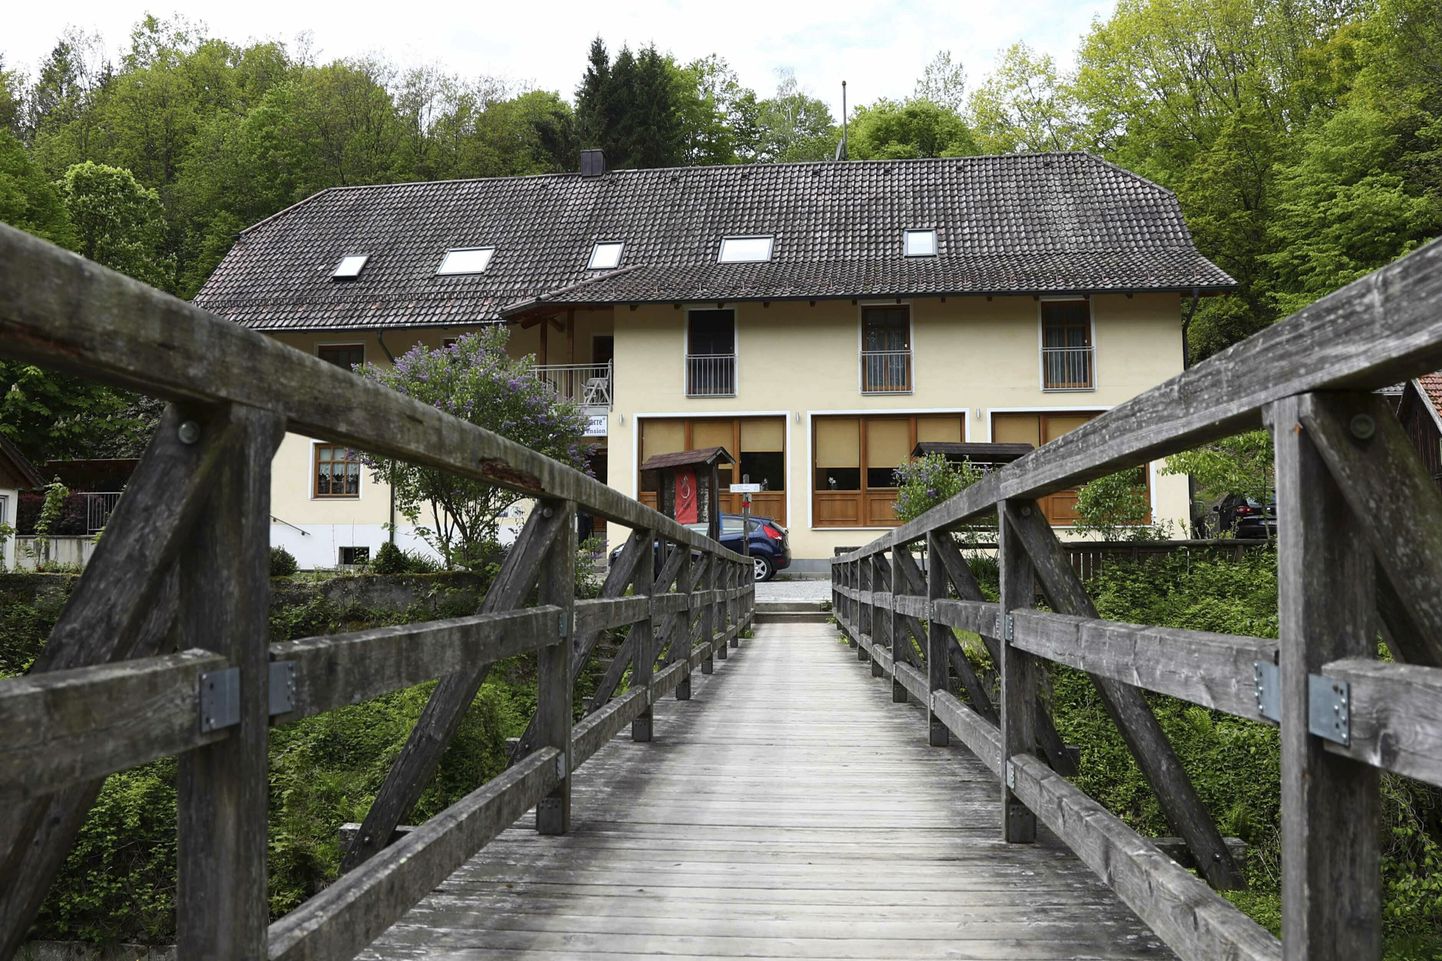 Hotell Passaus, kus salapärasel kombel suri kolm inimest.